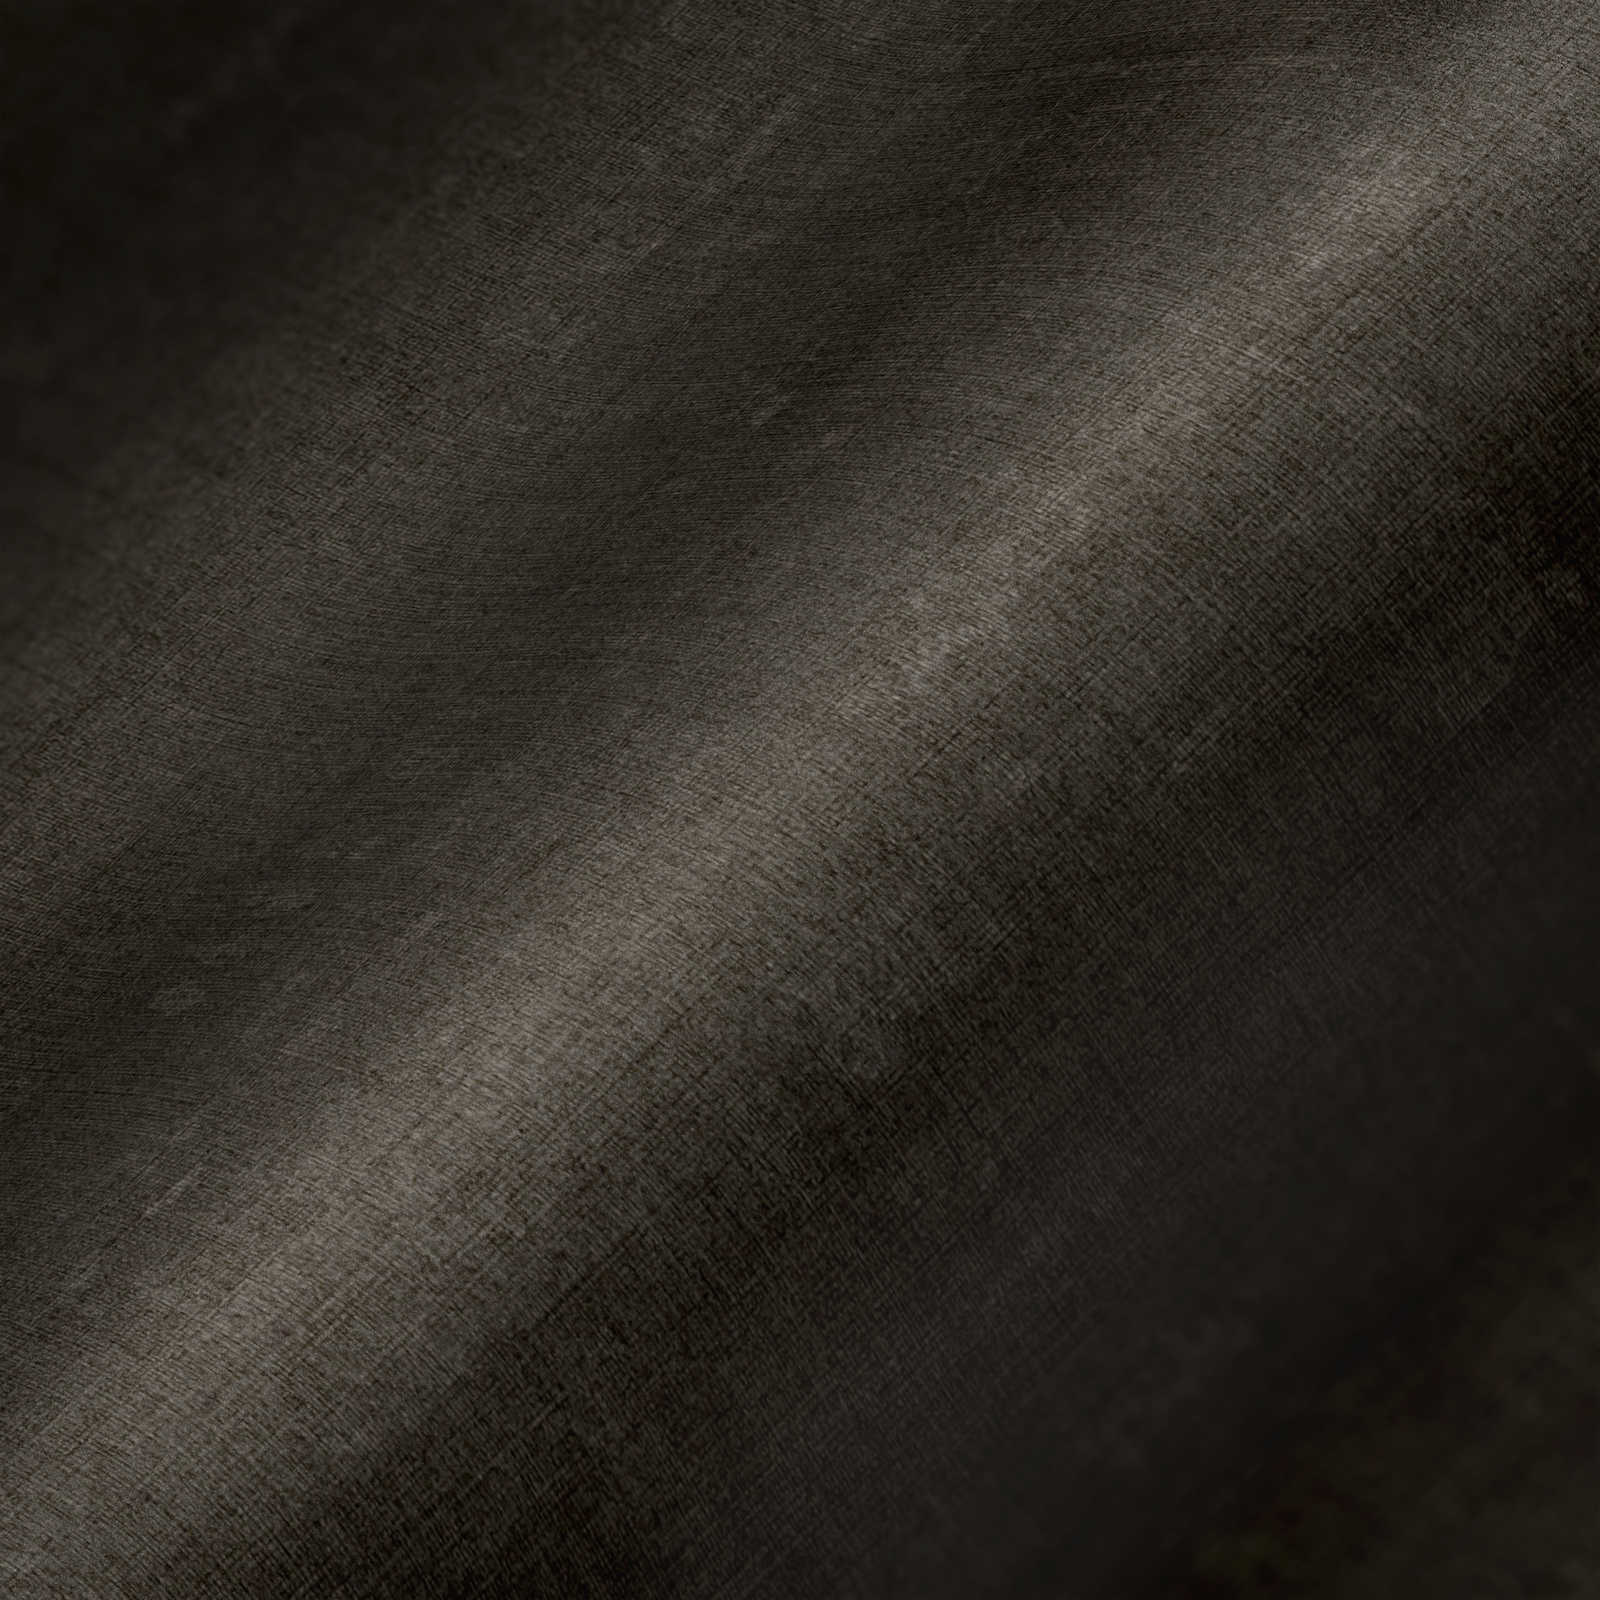             Braune Tapete einfarbig und meliert mit Strukturprägung
        